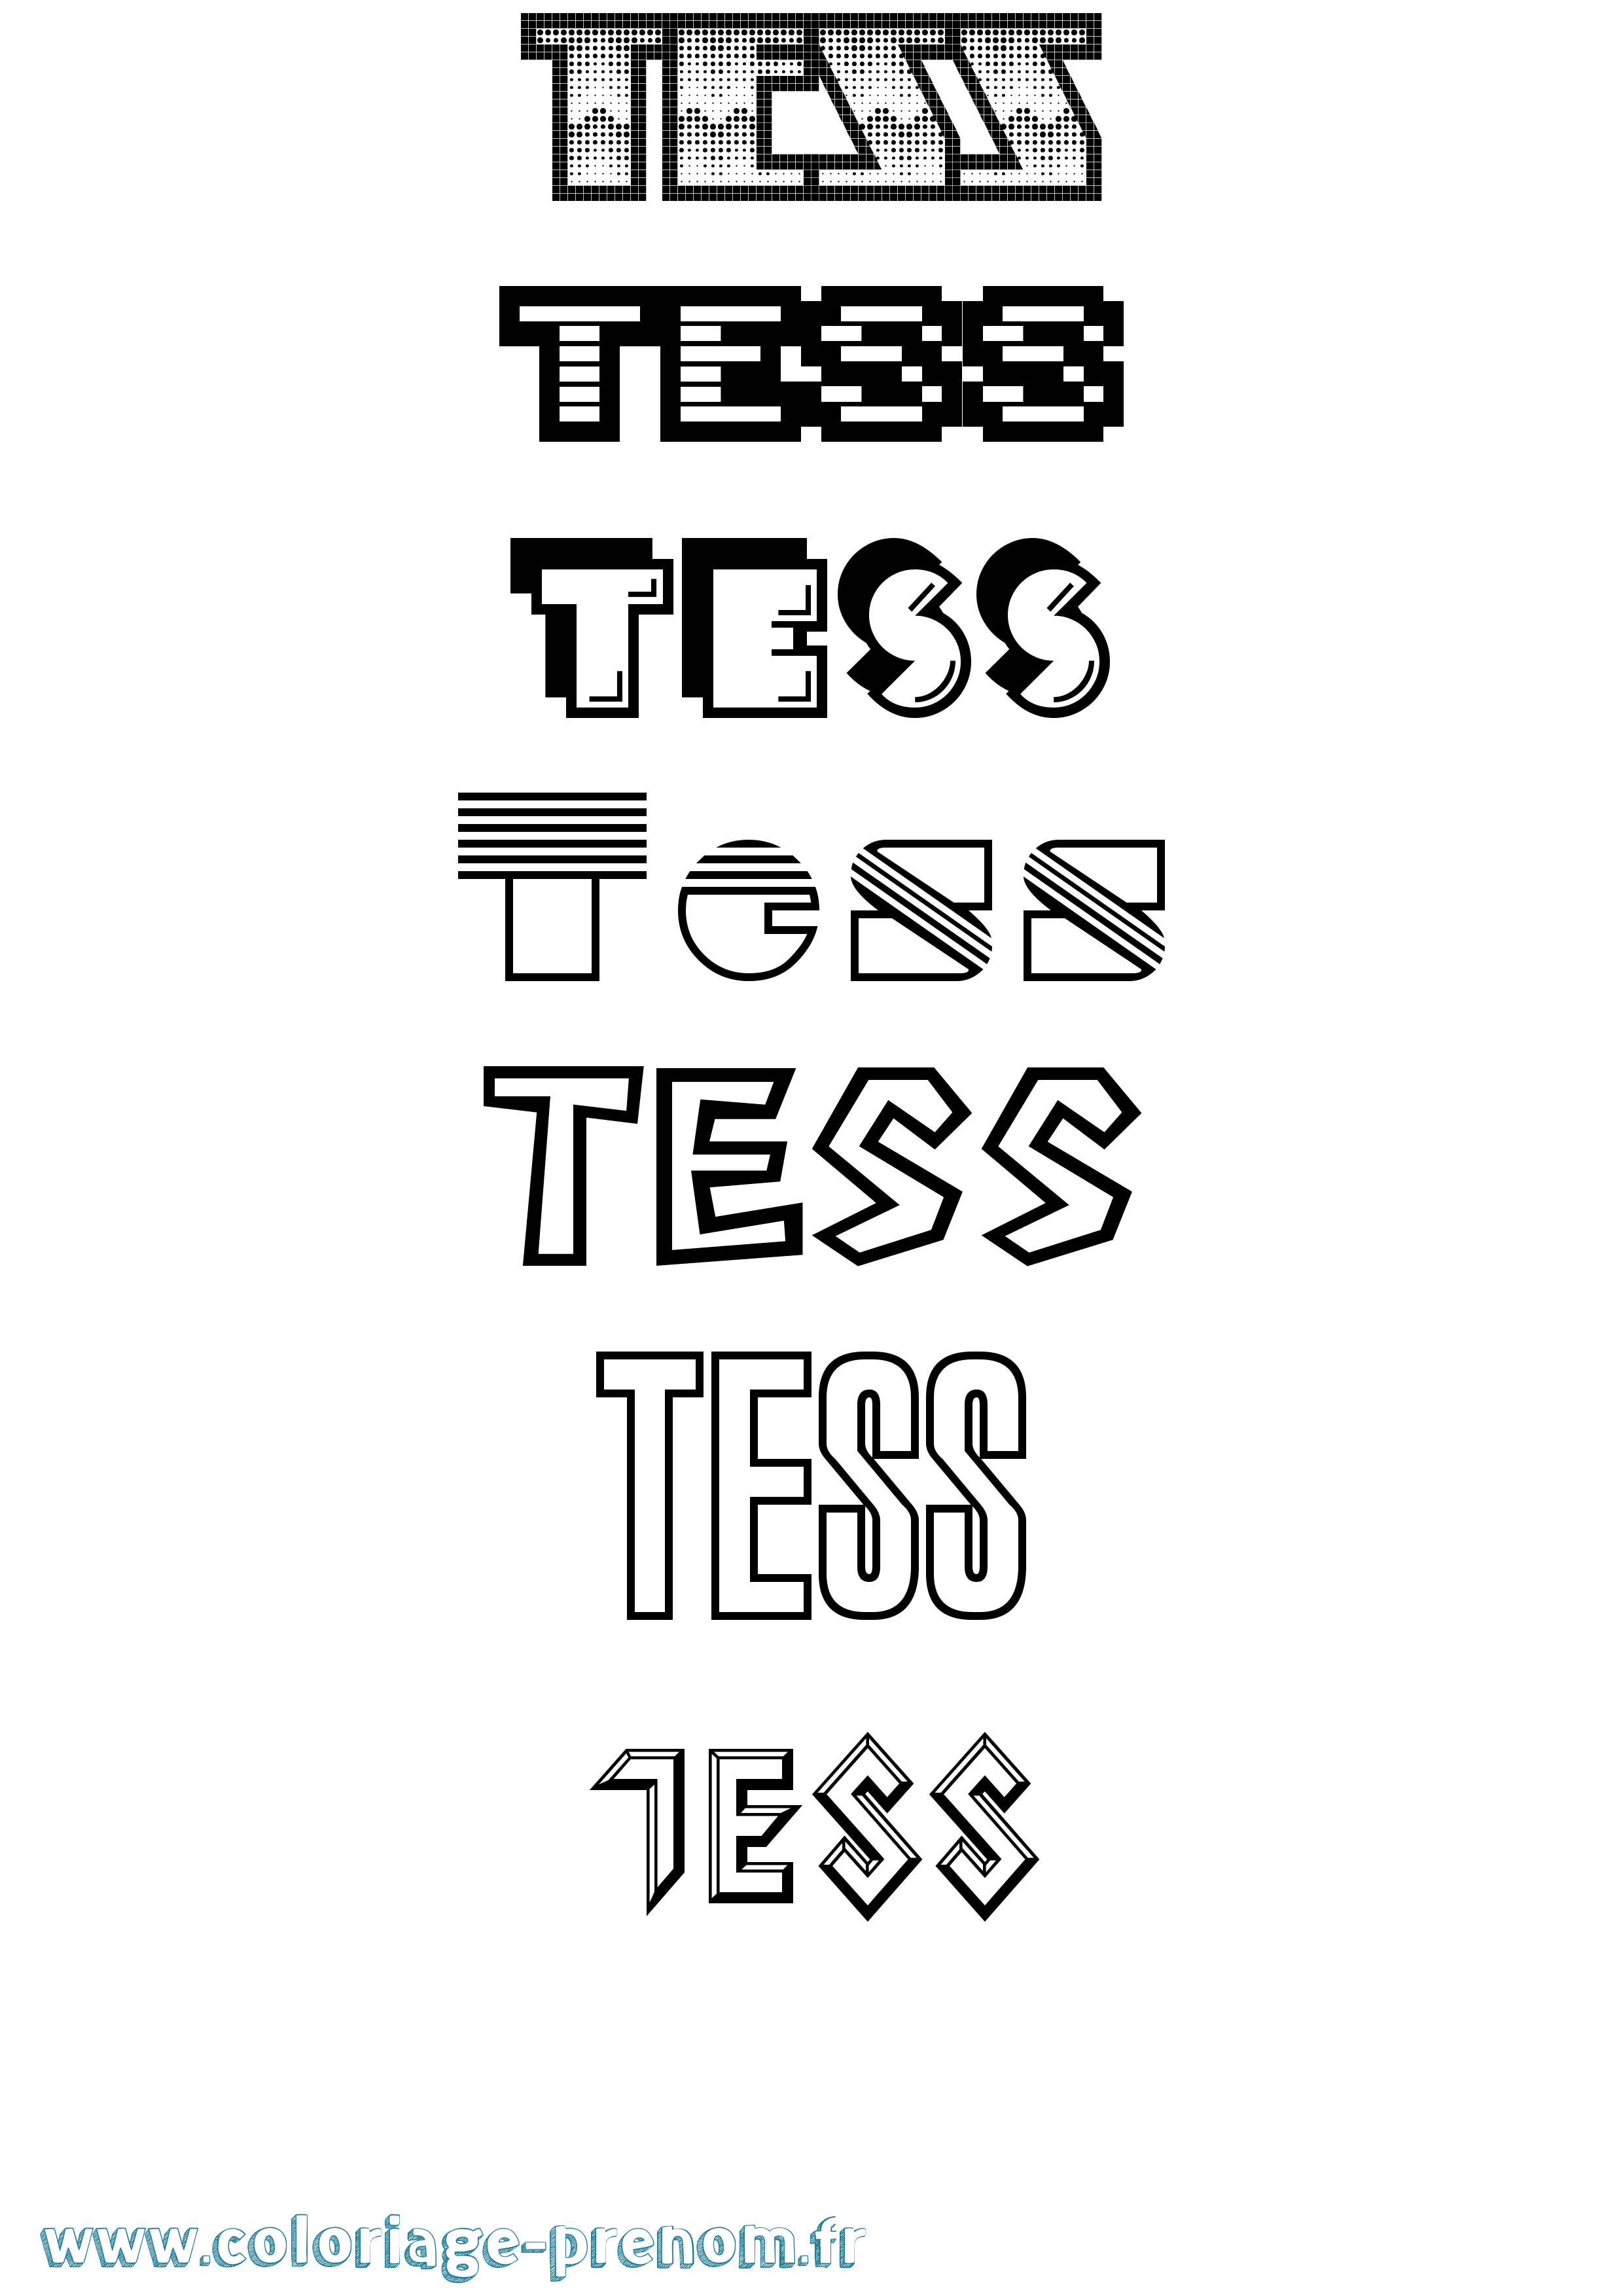 Coloriage prénom Tess Jeux Vidéos